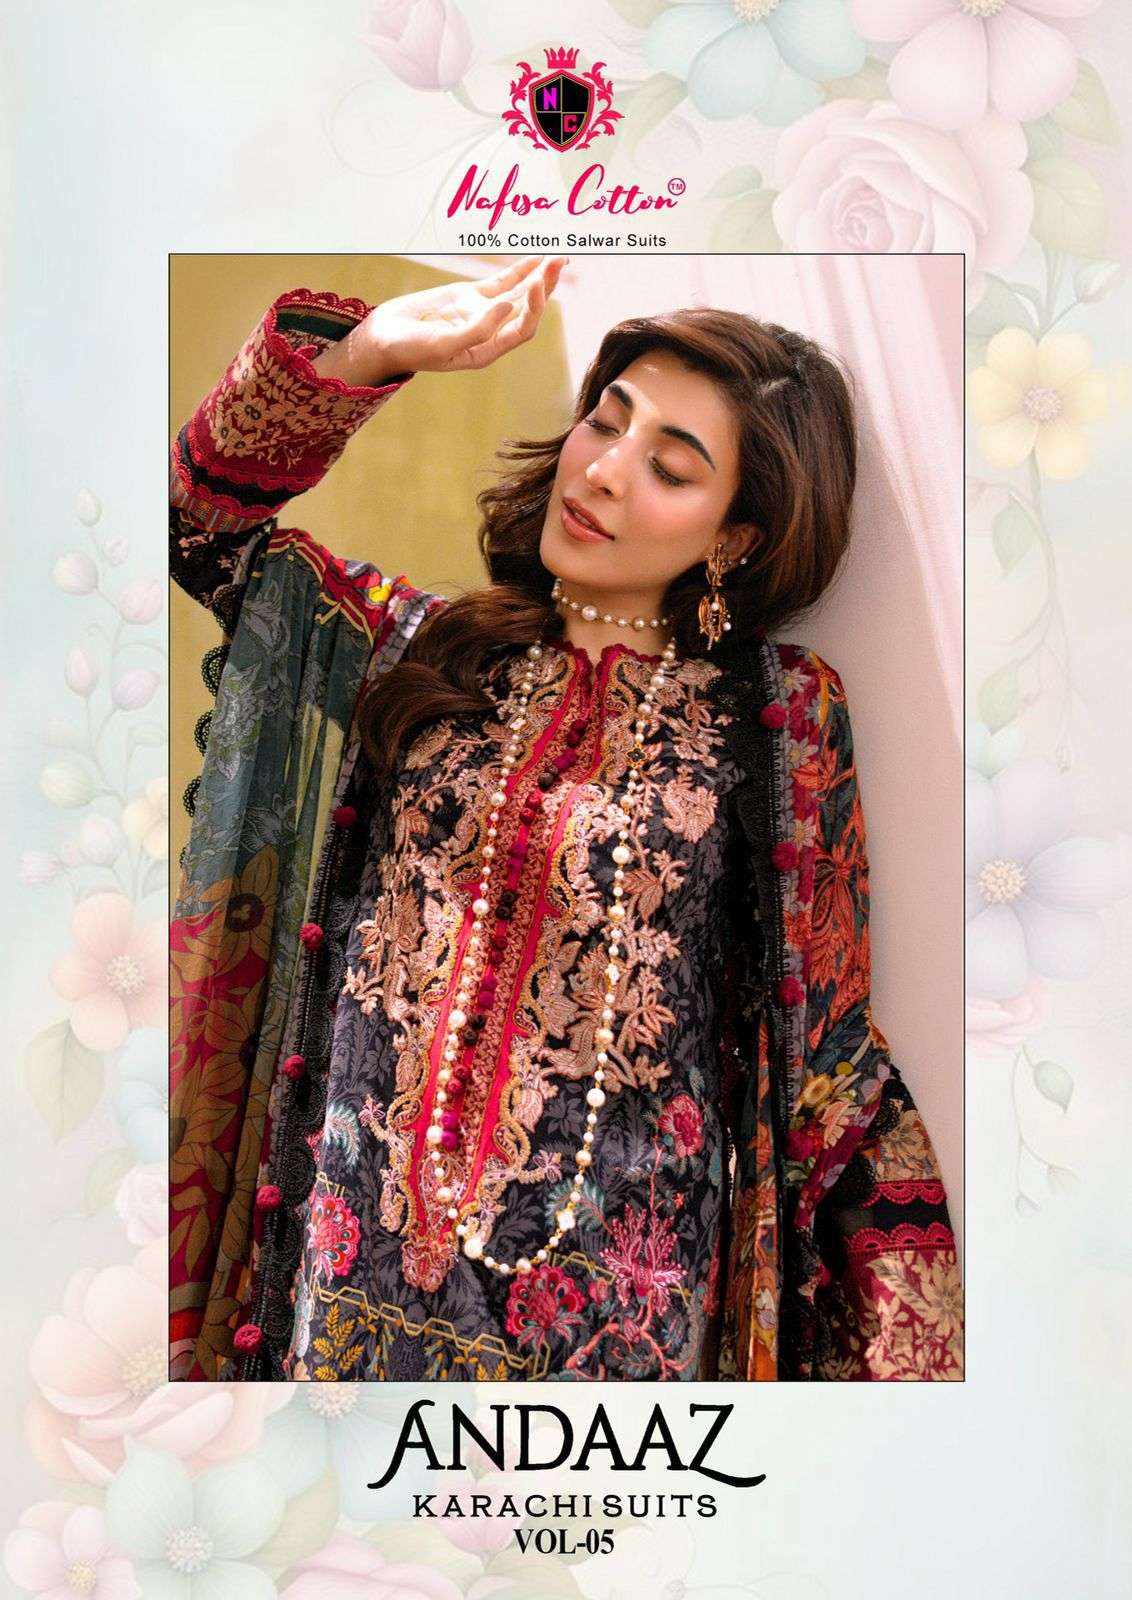 andaaz karachi suits vol-5 by nafisa cotton 5001-5006 series fancy designer pakistani suits catalogue surat gujarat 